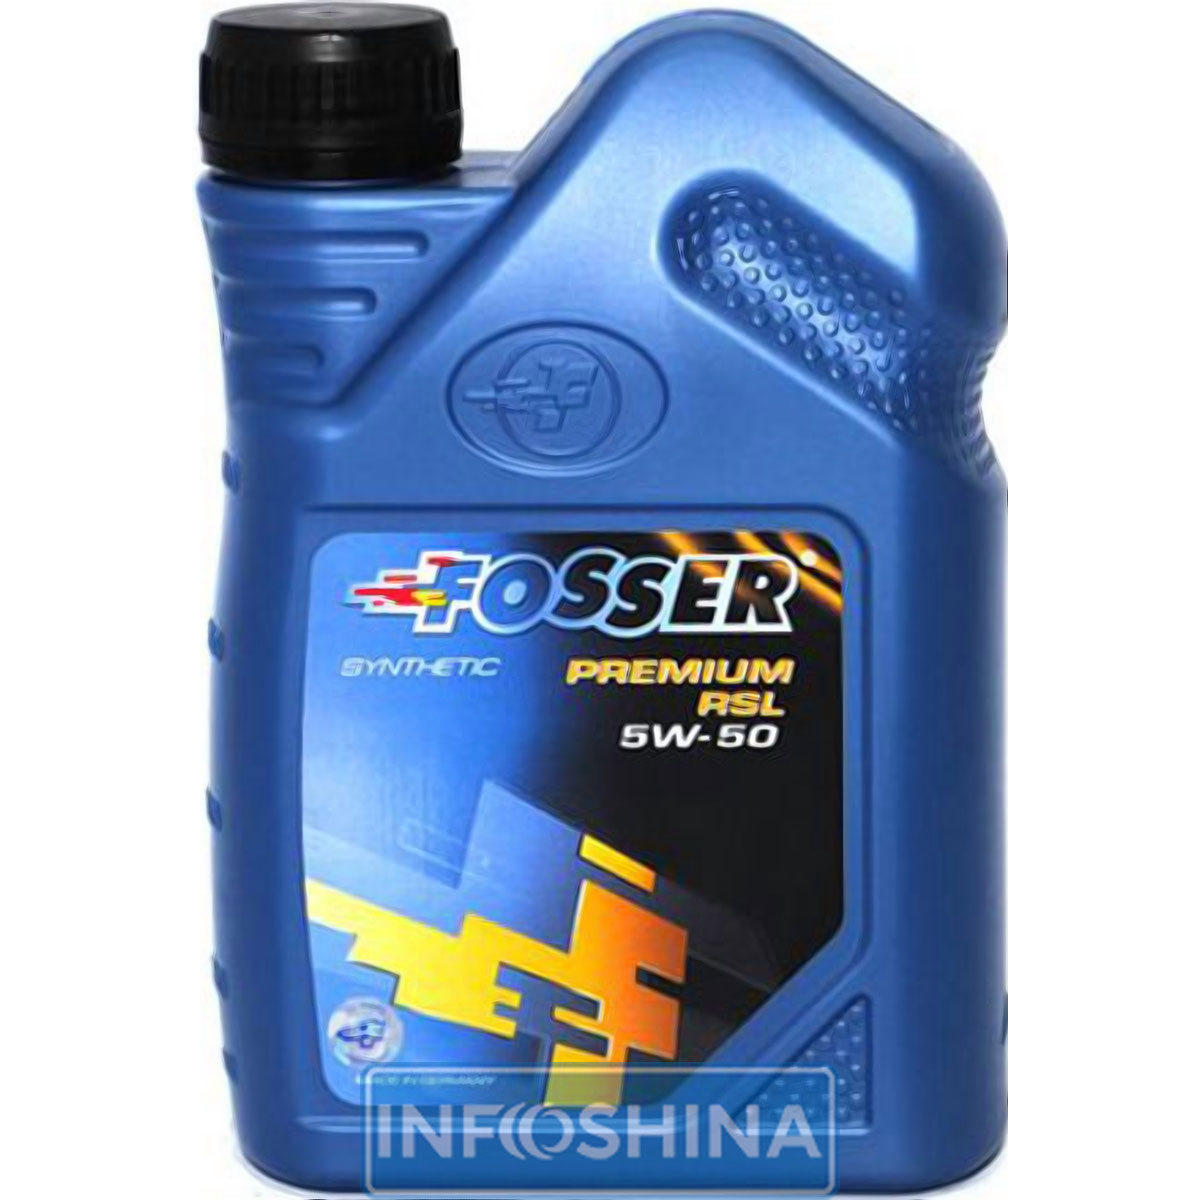 Fosser Premium RSL 5W-50